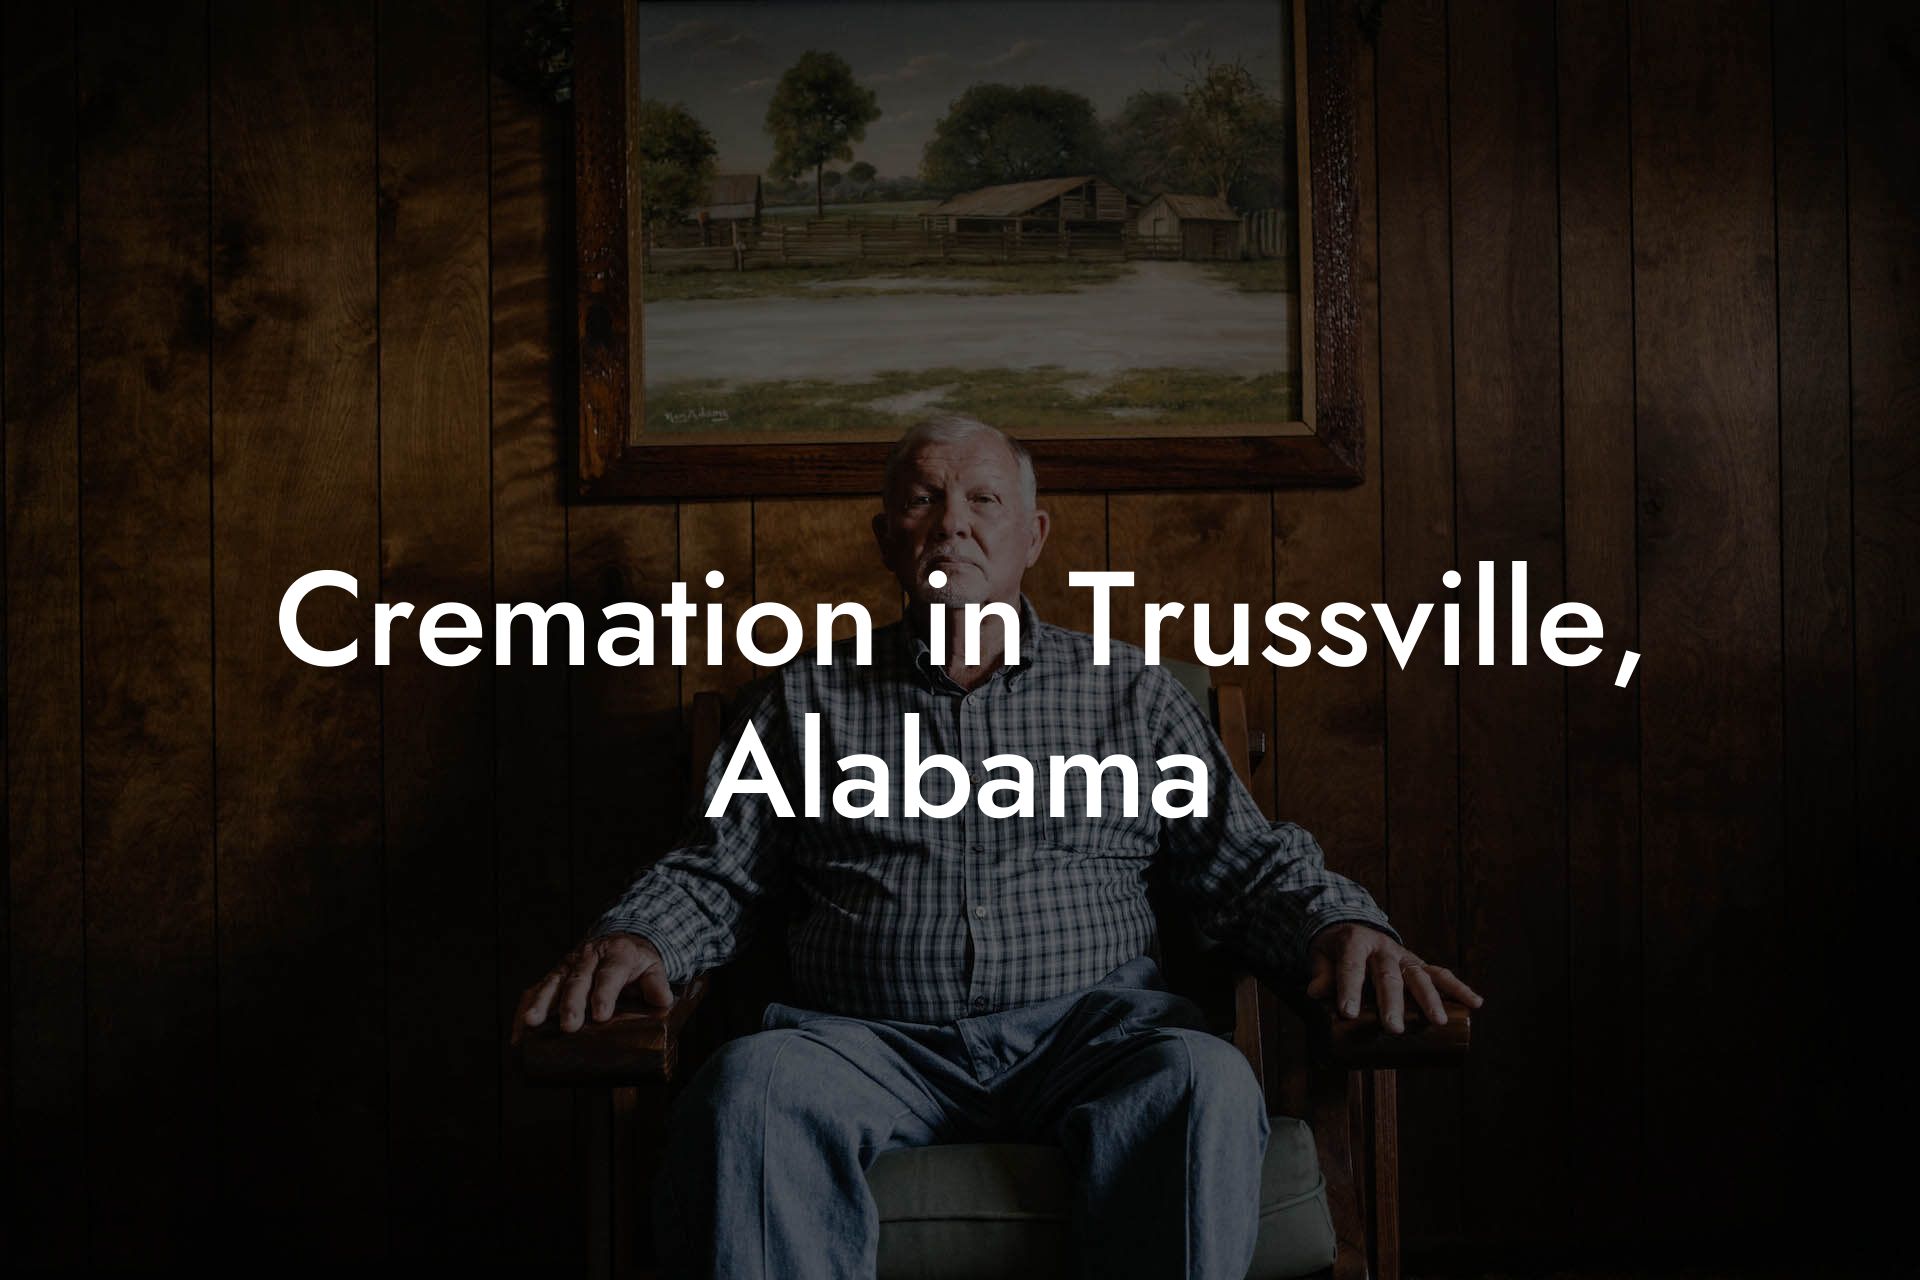 Cremation in Trussville, Alabama